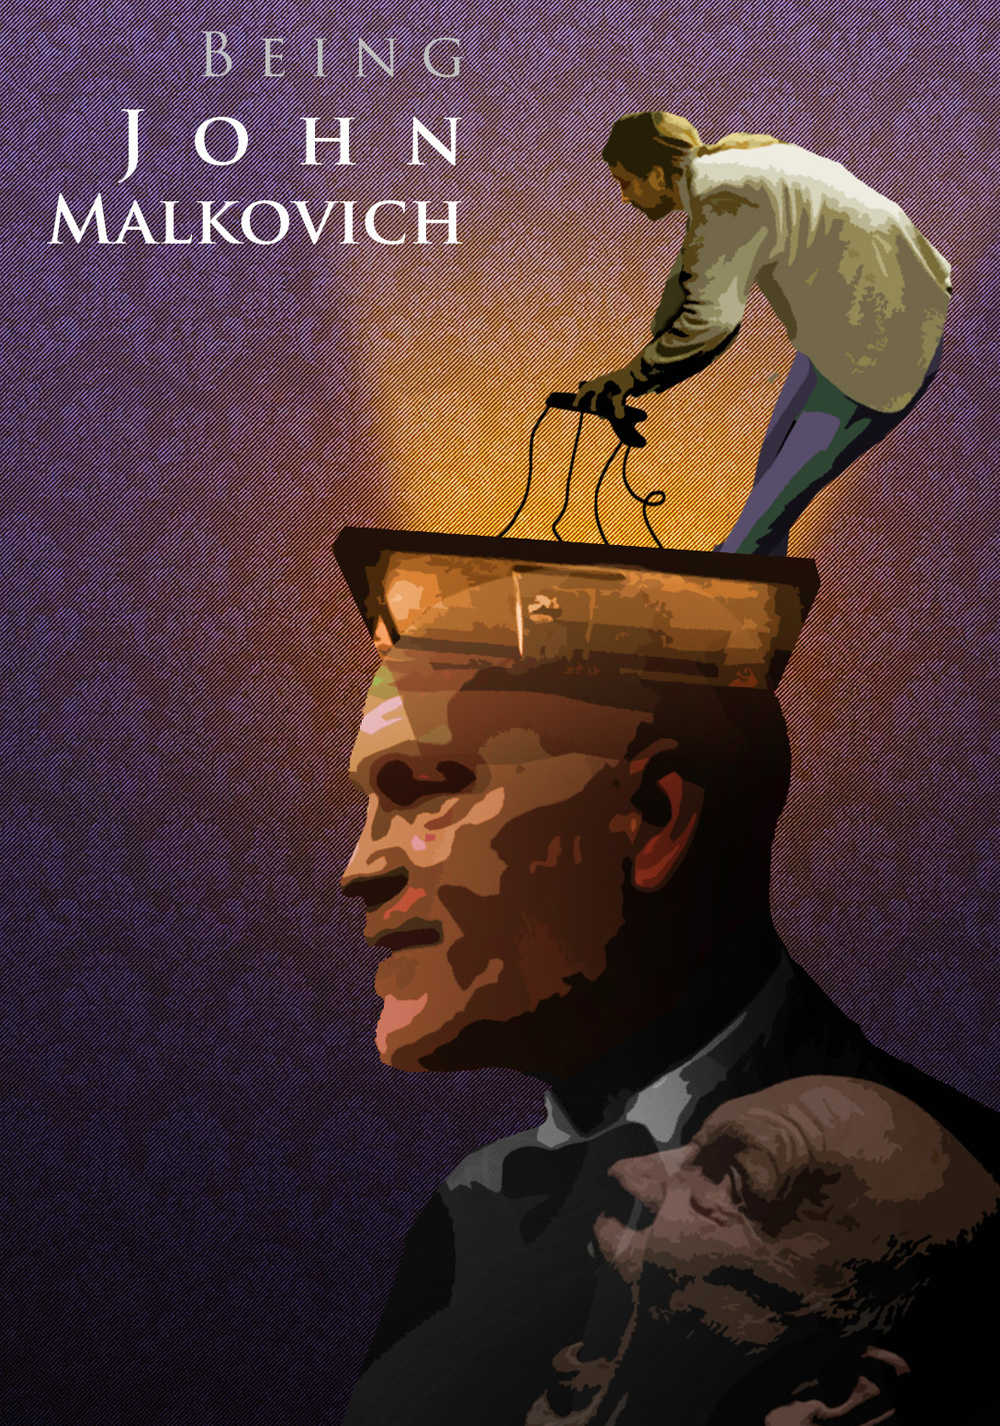 Being John Malkovich Art